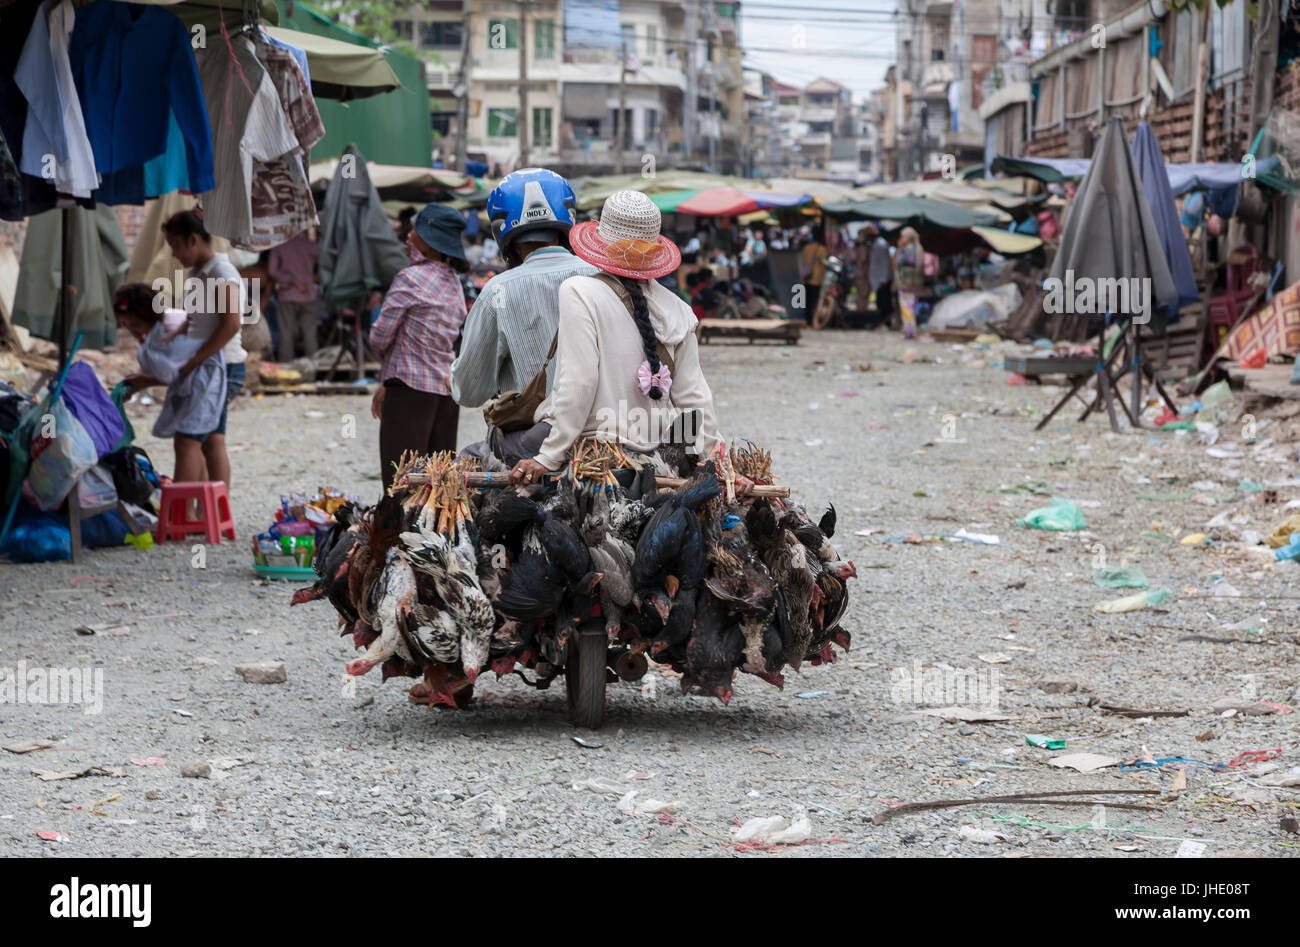 Motorbike chickens Phnom Penh. Cambodia Stock Photo